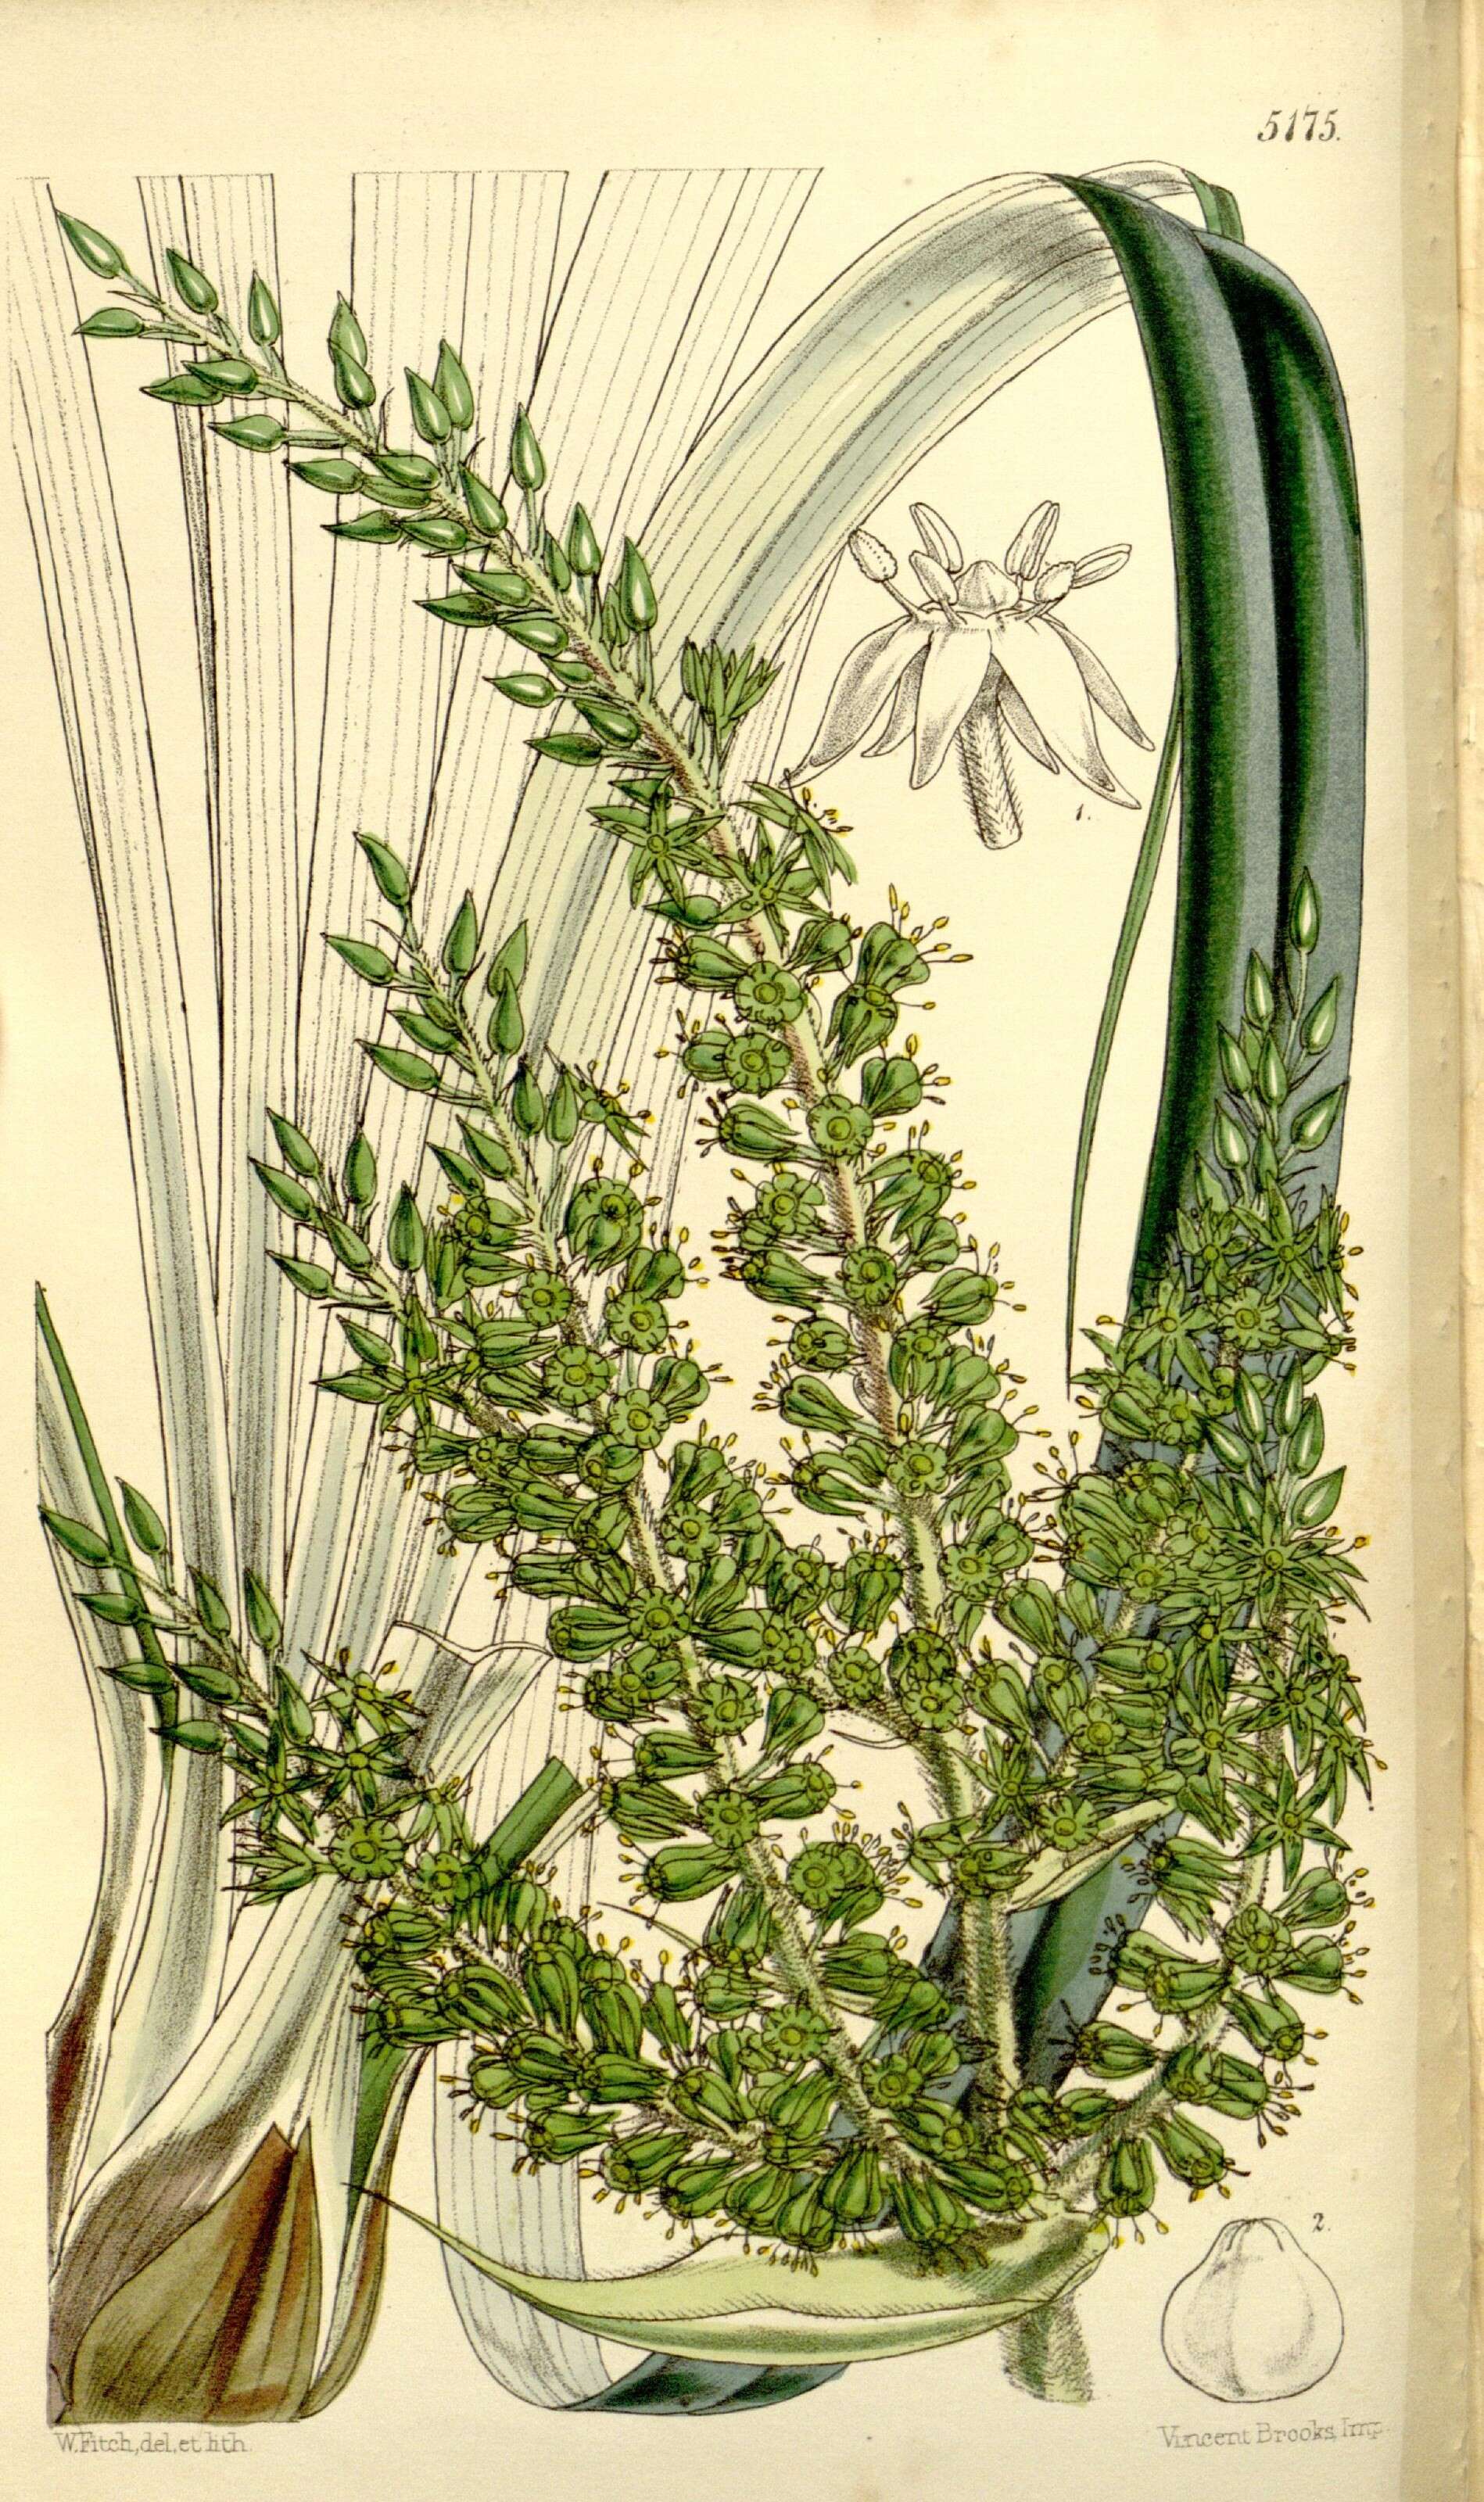 Sivun Asteliaceae kuva